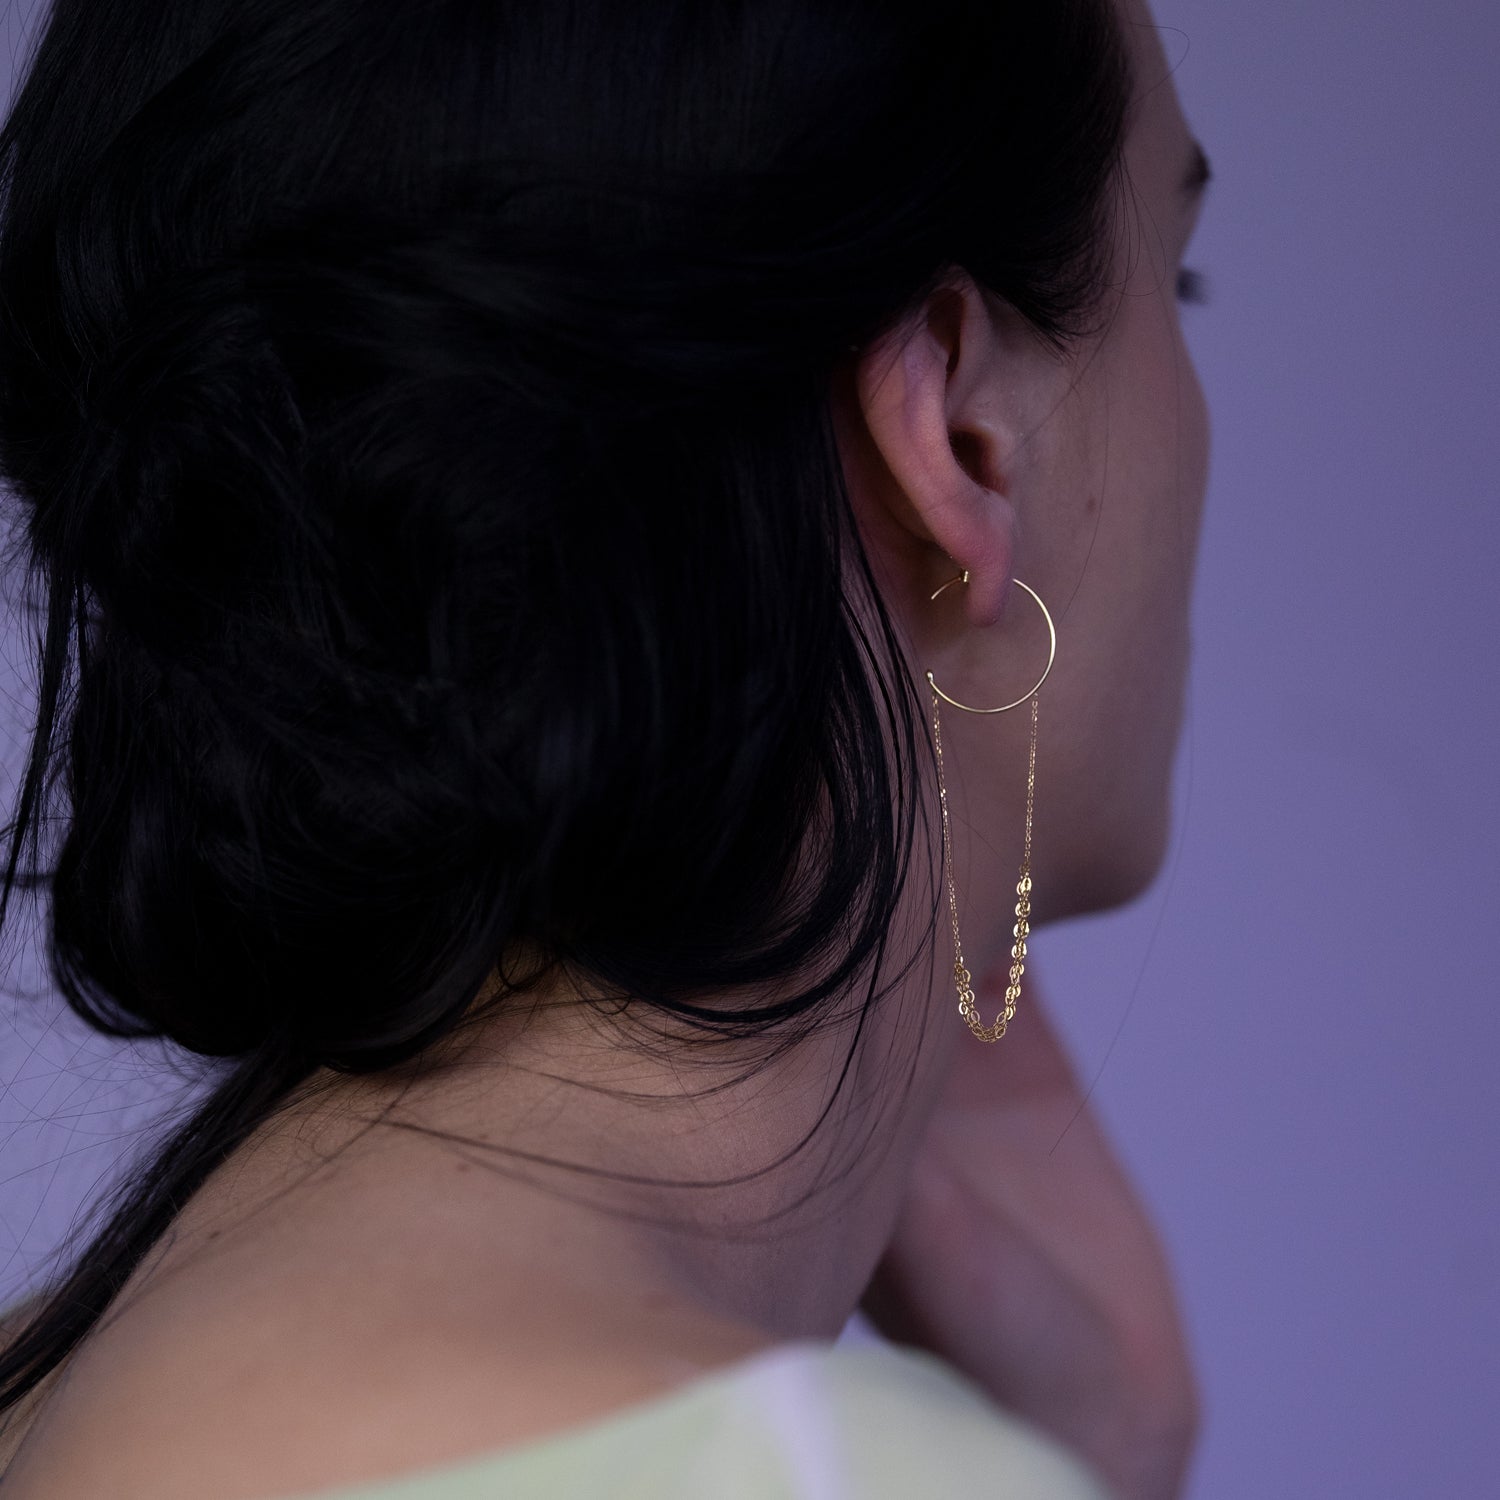 Buy 14k Gold Hoop Earrings. 2.5 Inch Genuine Gold Hoop Earrings. 2.5mm Hoops.  Jewelry Gift. Online in India - Etsy